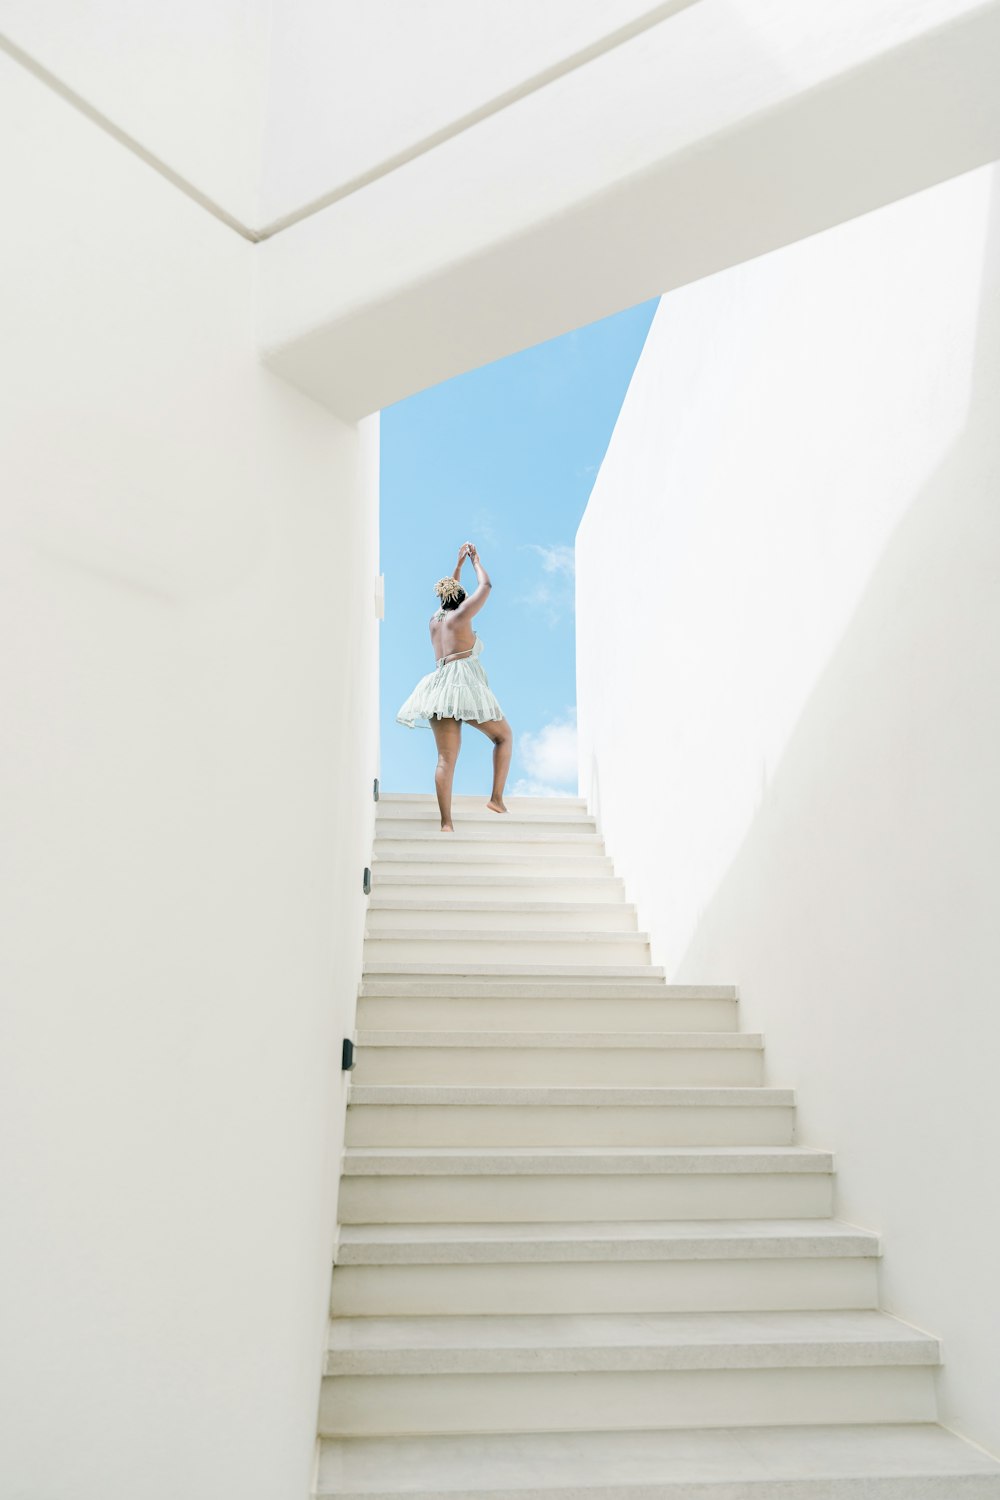 Une femme vêtue d’une robe blanche descend un escalier